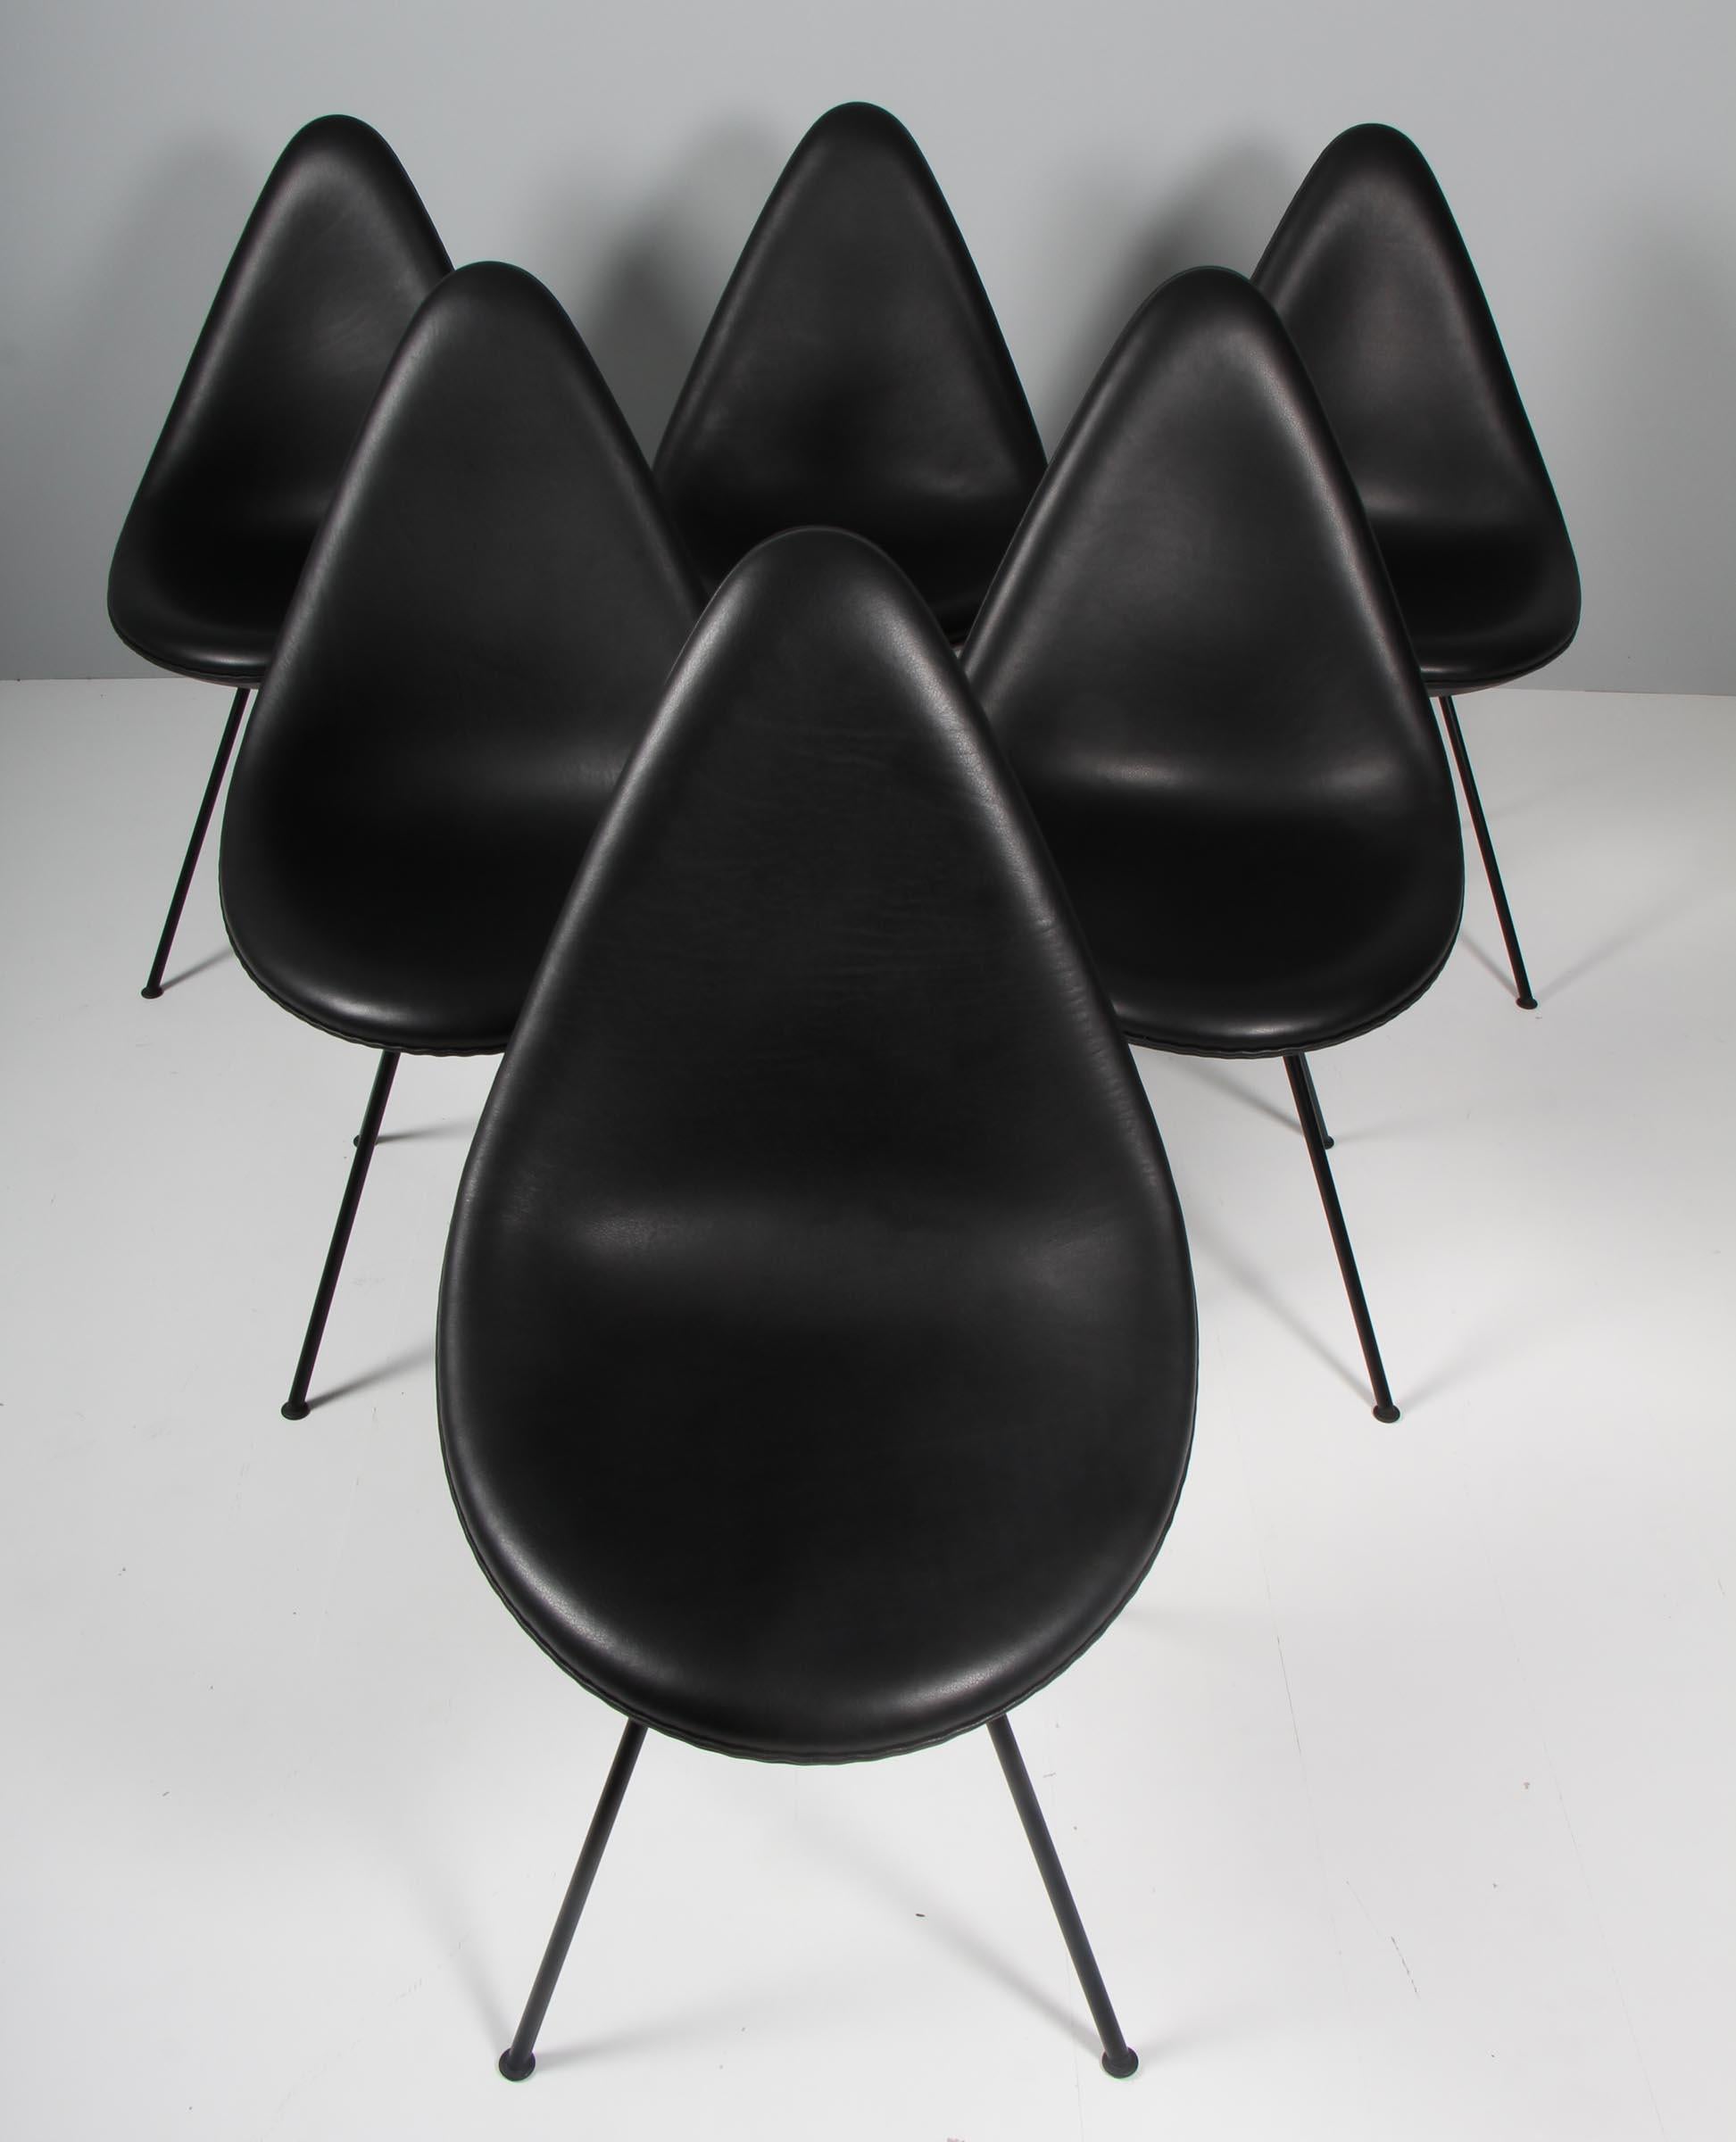 Chaises de salle à manger Arne Jacobsen, nouvellement recouvertes de cuir aniline noir.

Pieds en acier peint par poudrage.

Modèle 3110 